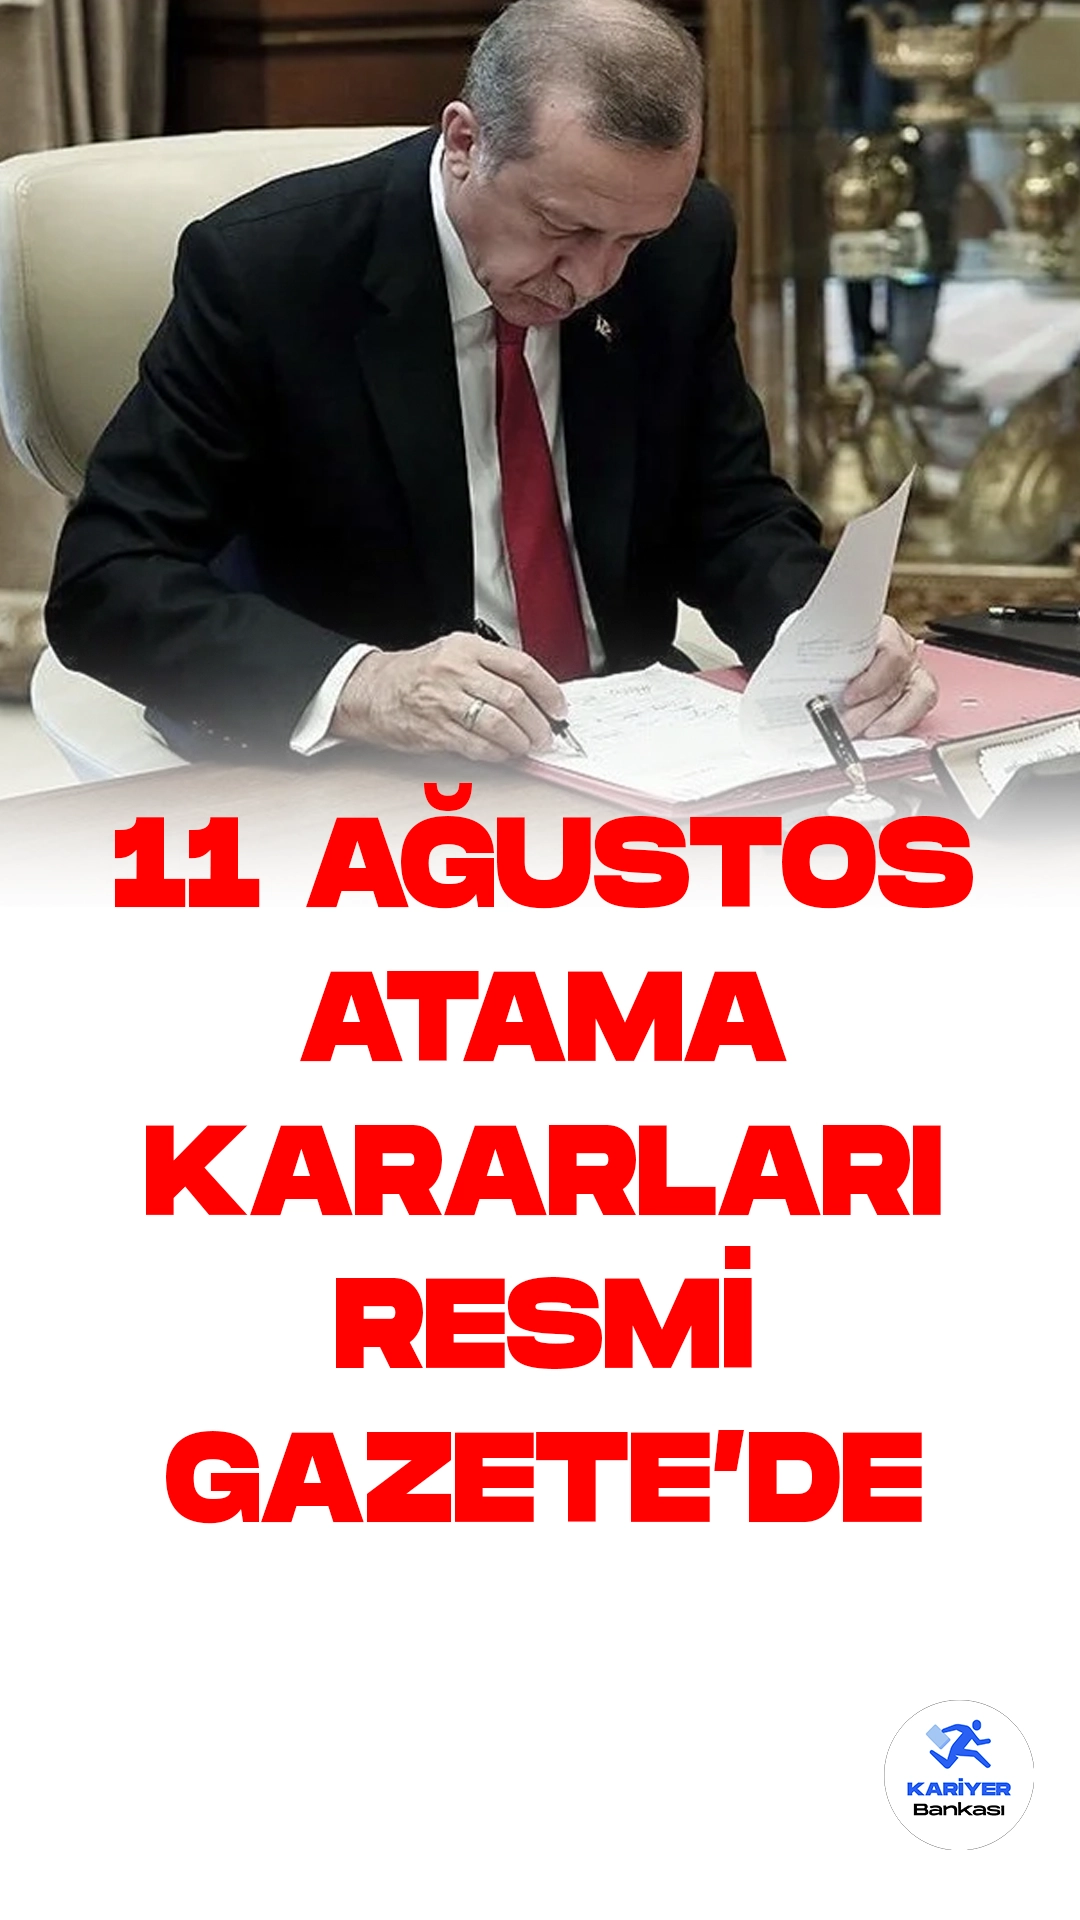 11 Ağustos Atama Kararları Resmi Gazete'de Yayımlandı.Cumhurbaşkanı Recep Tayyip Erdoğan'ın imzasıyla gerçekleştirilen yeni atama kararları, Resmi Gazete'de yayımlandı. Üst düzey kamu yöneticiliği pozisyonlarına yapılan atamalar, Türkiye'nin çeşitli bakanlıklarında gerçekleşti.